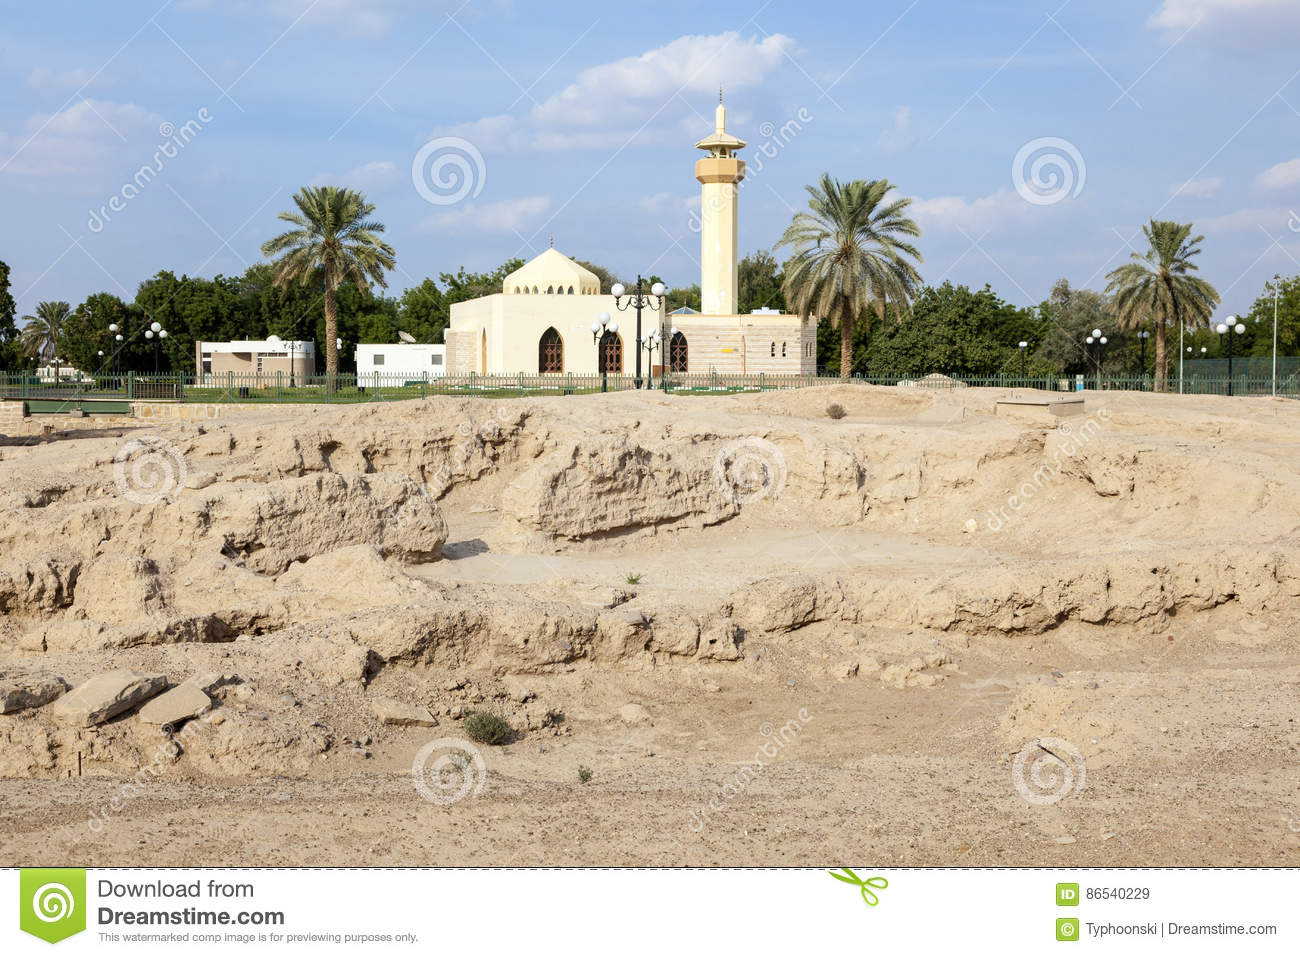 Hili Archaeological Park, United Arab Emirates 2019.